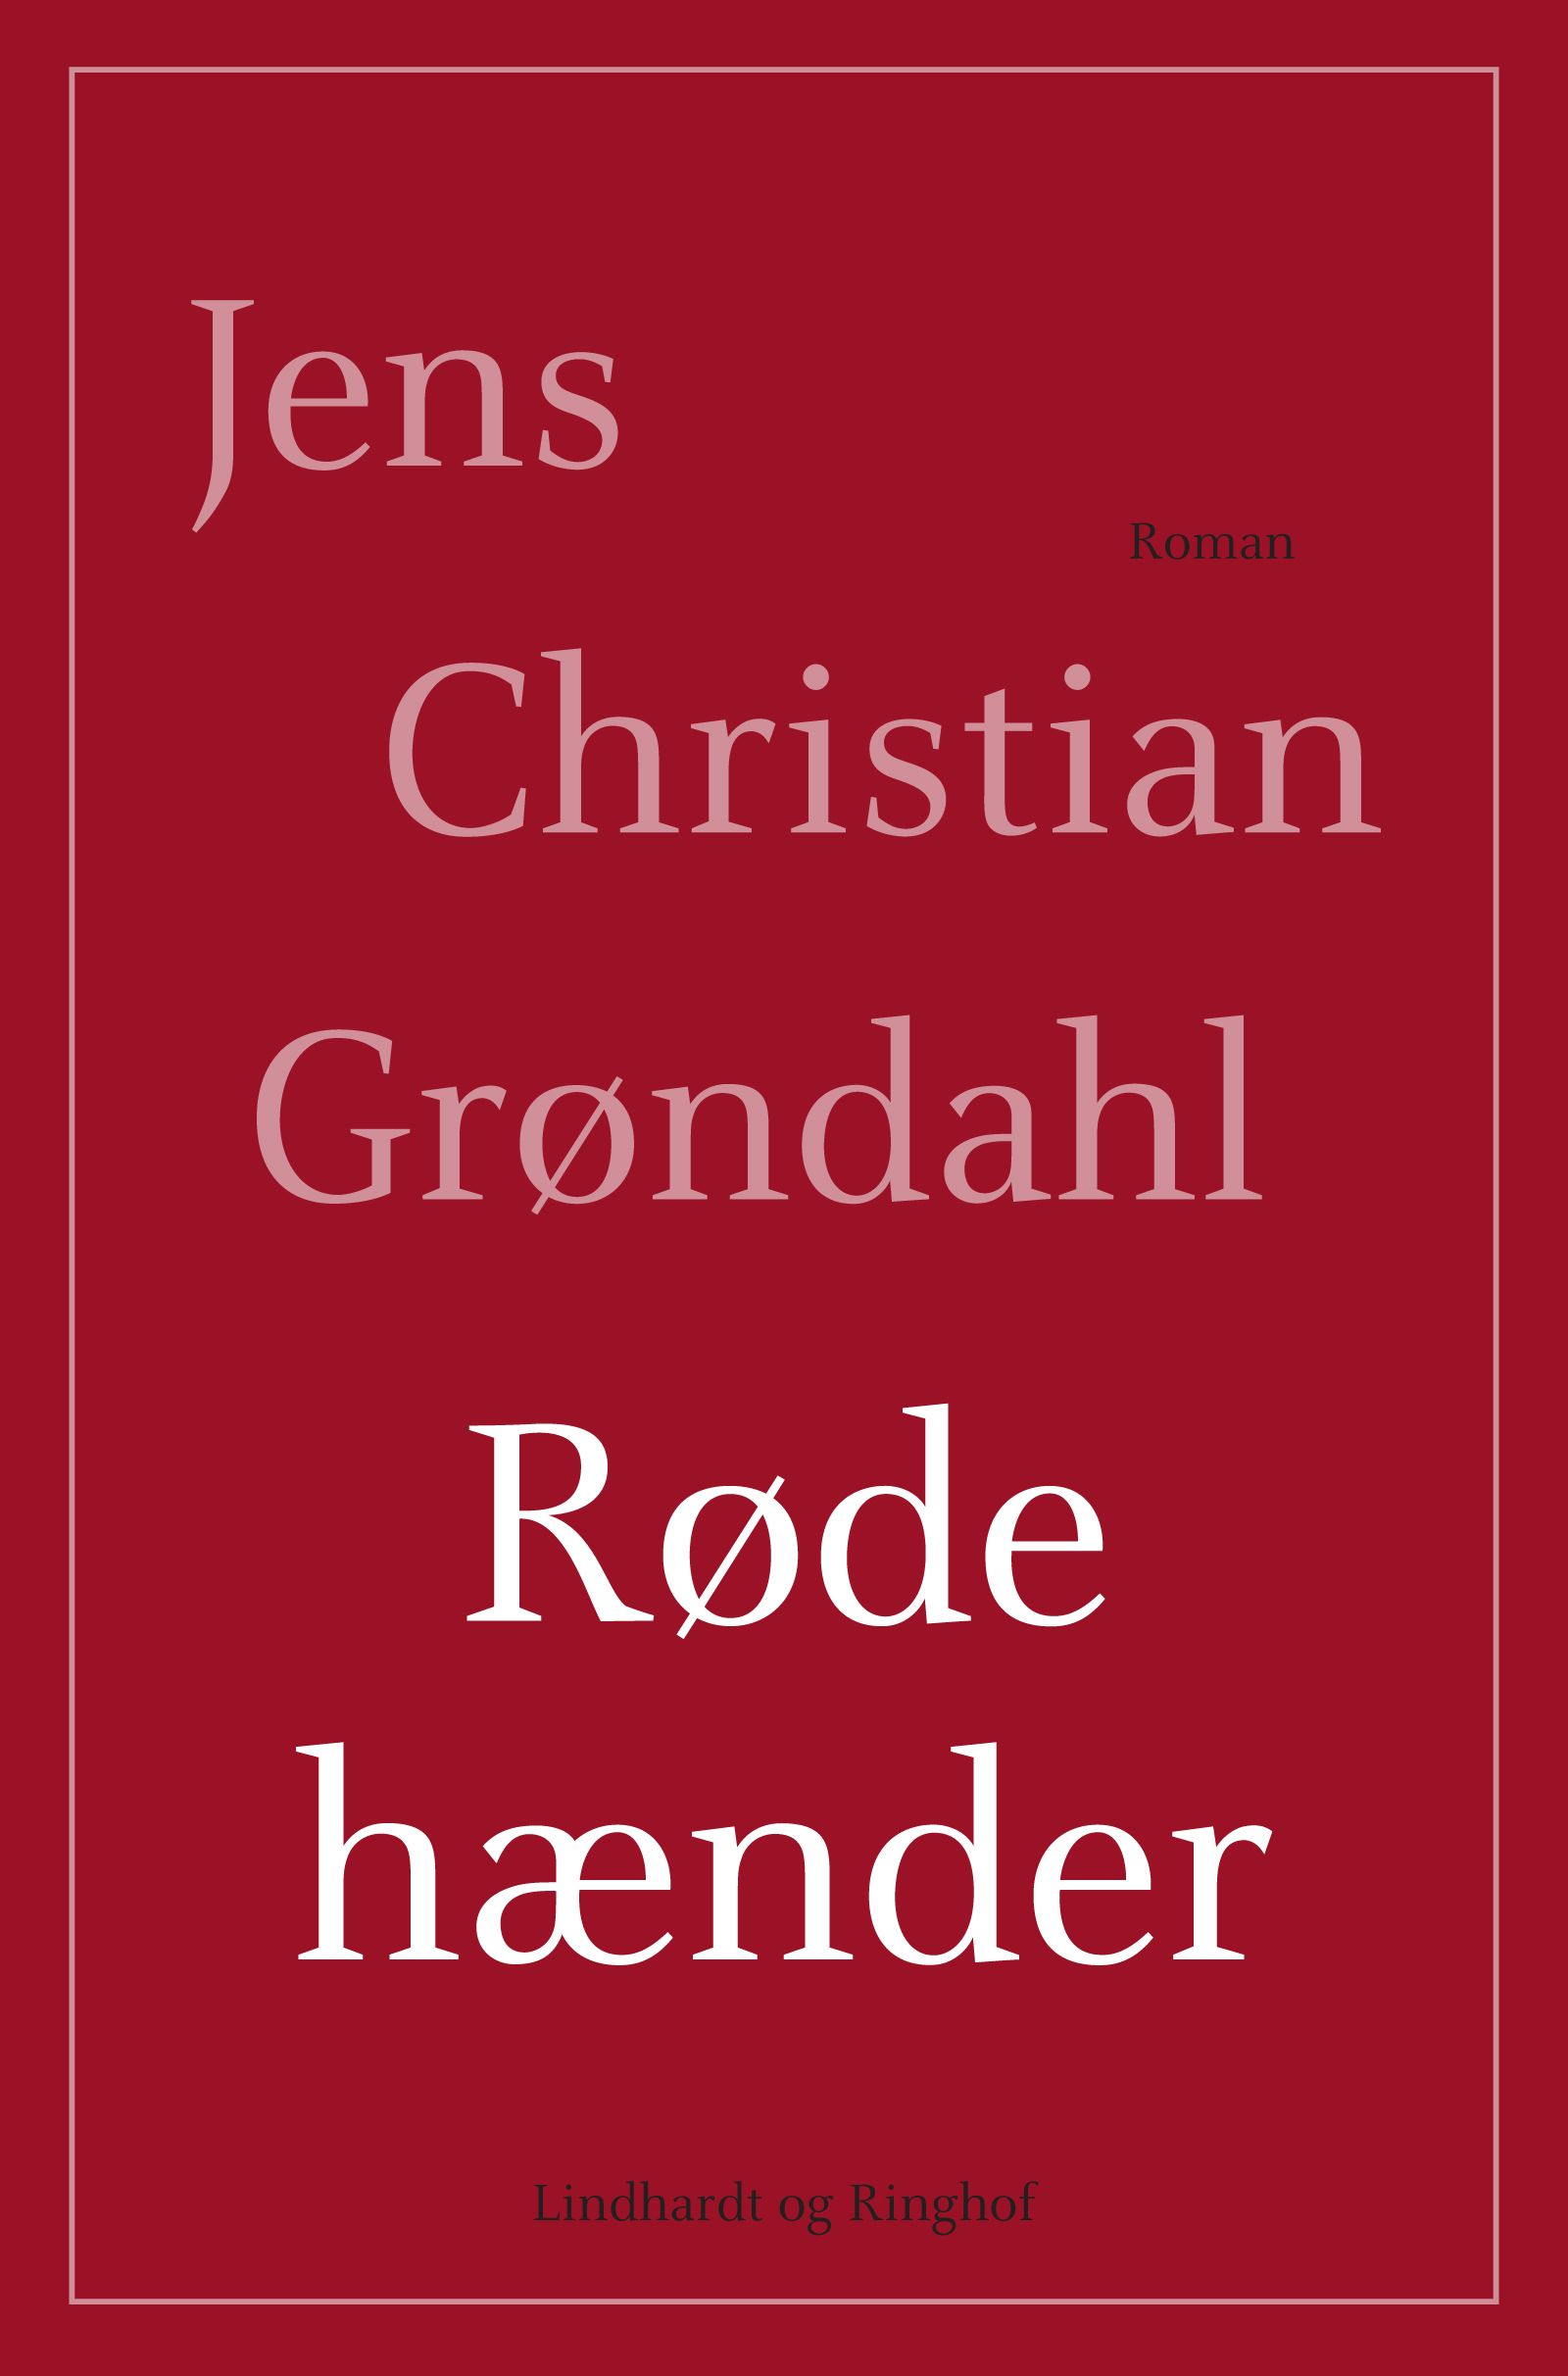 Røde hænder, e-bok av Jens Christian Grøndahl